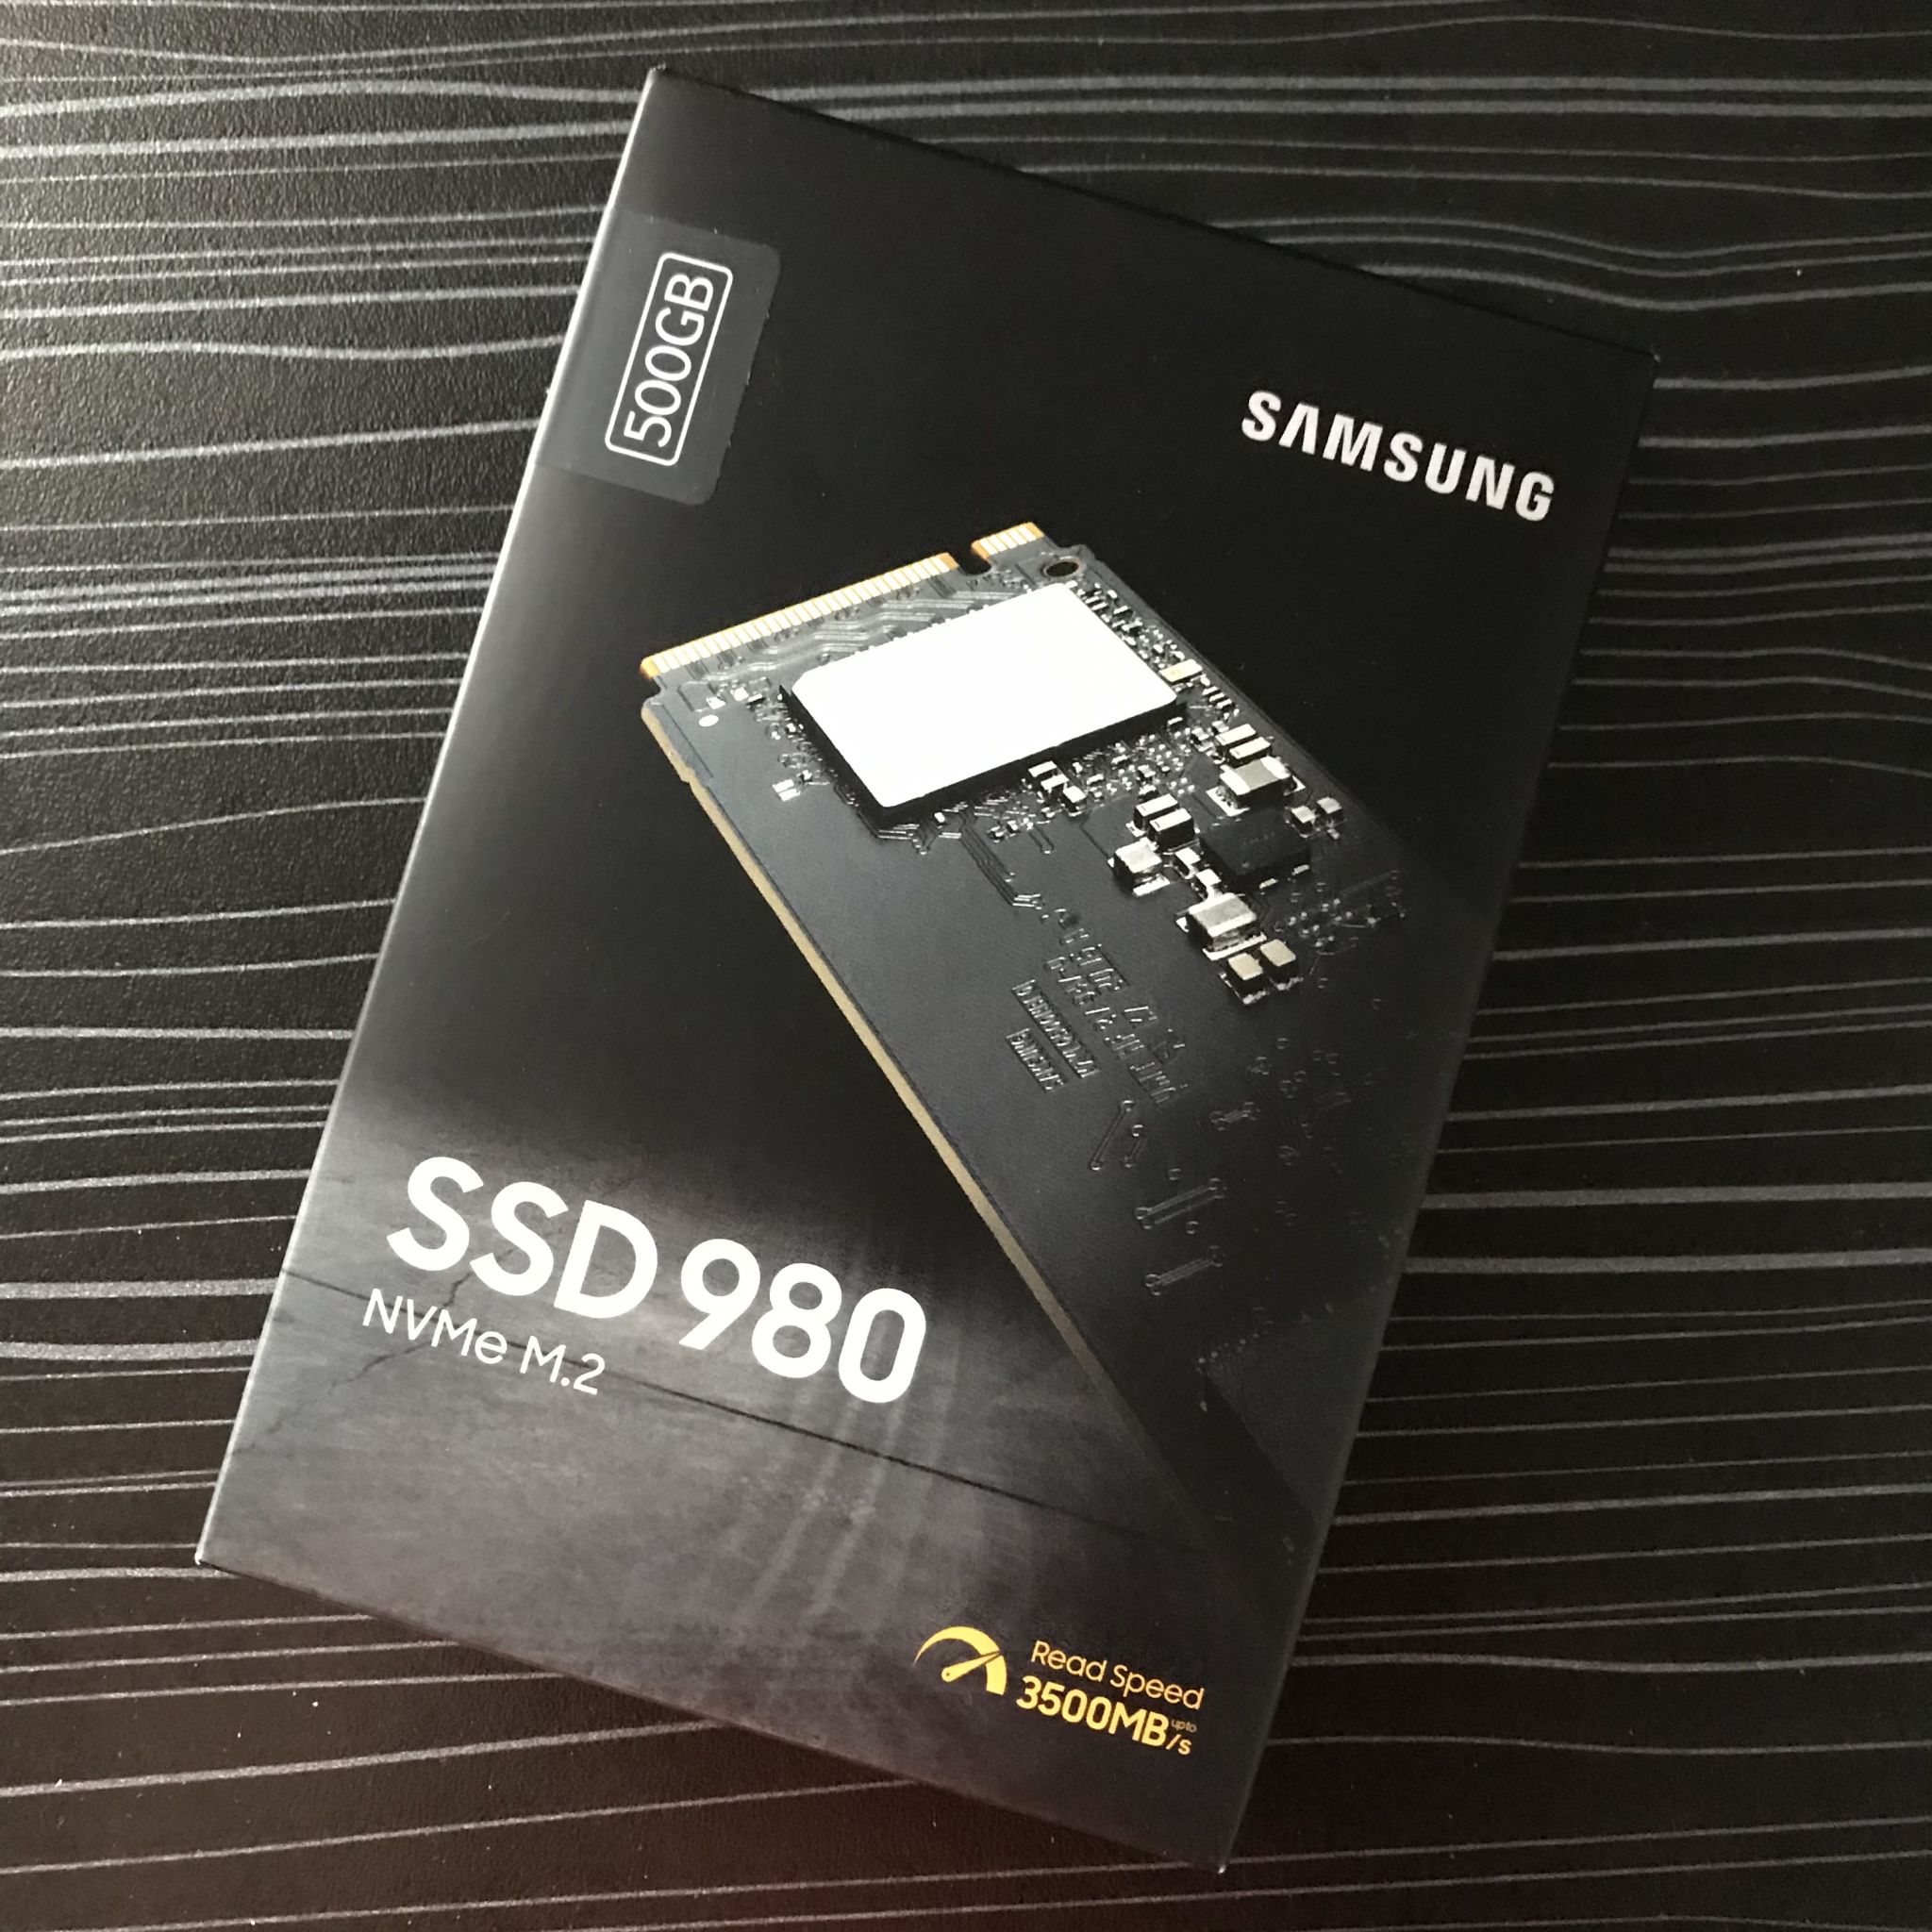 Samsung 980 500gb